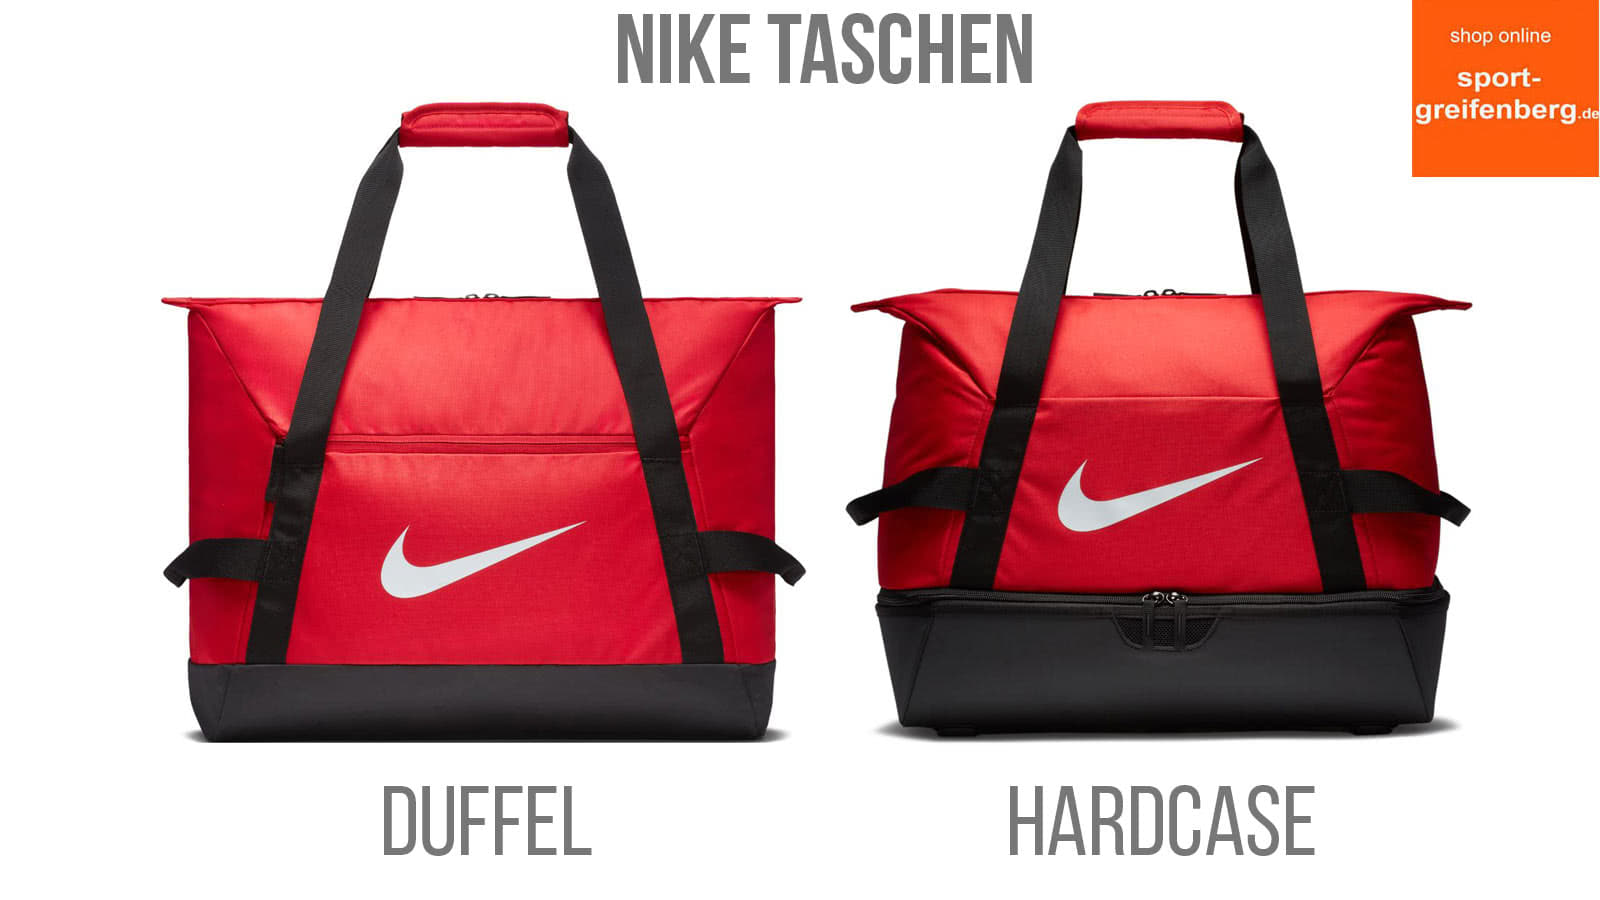 Die Nike Duffel und Nike Hardcase Sporttaschen